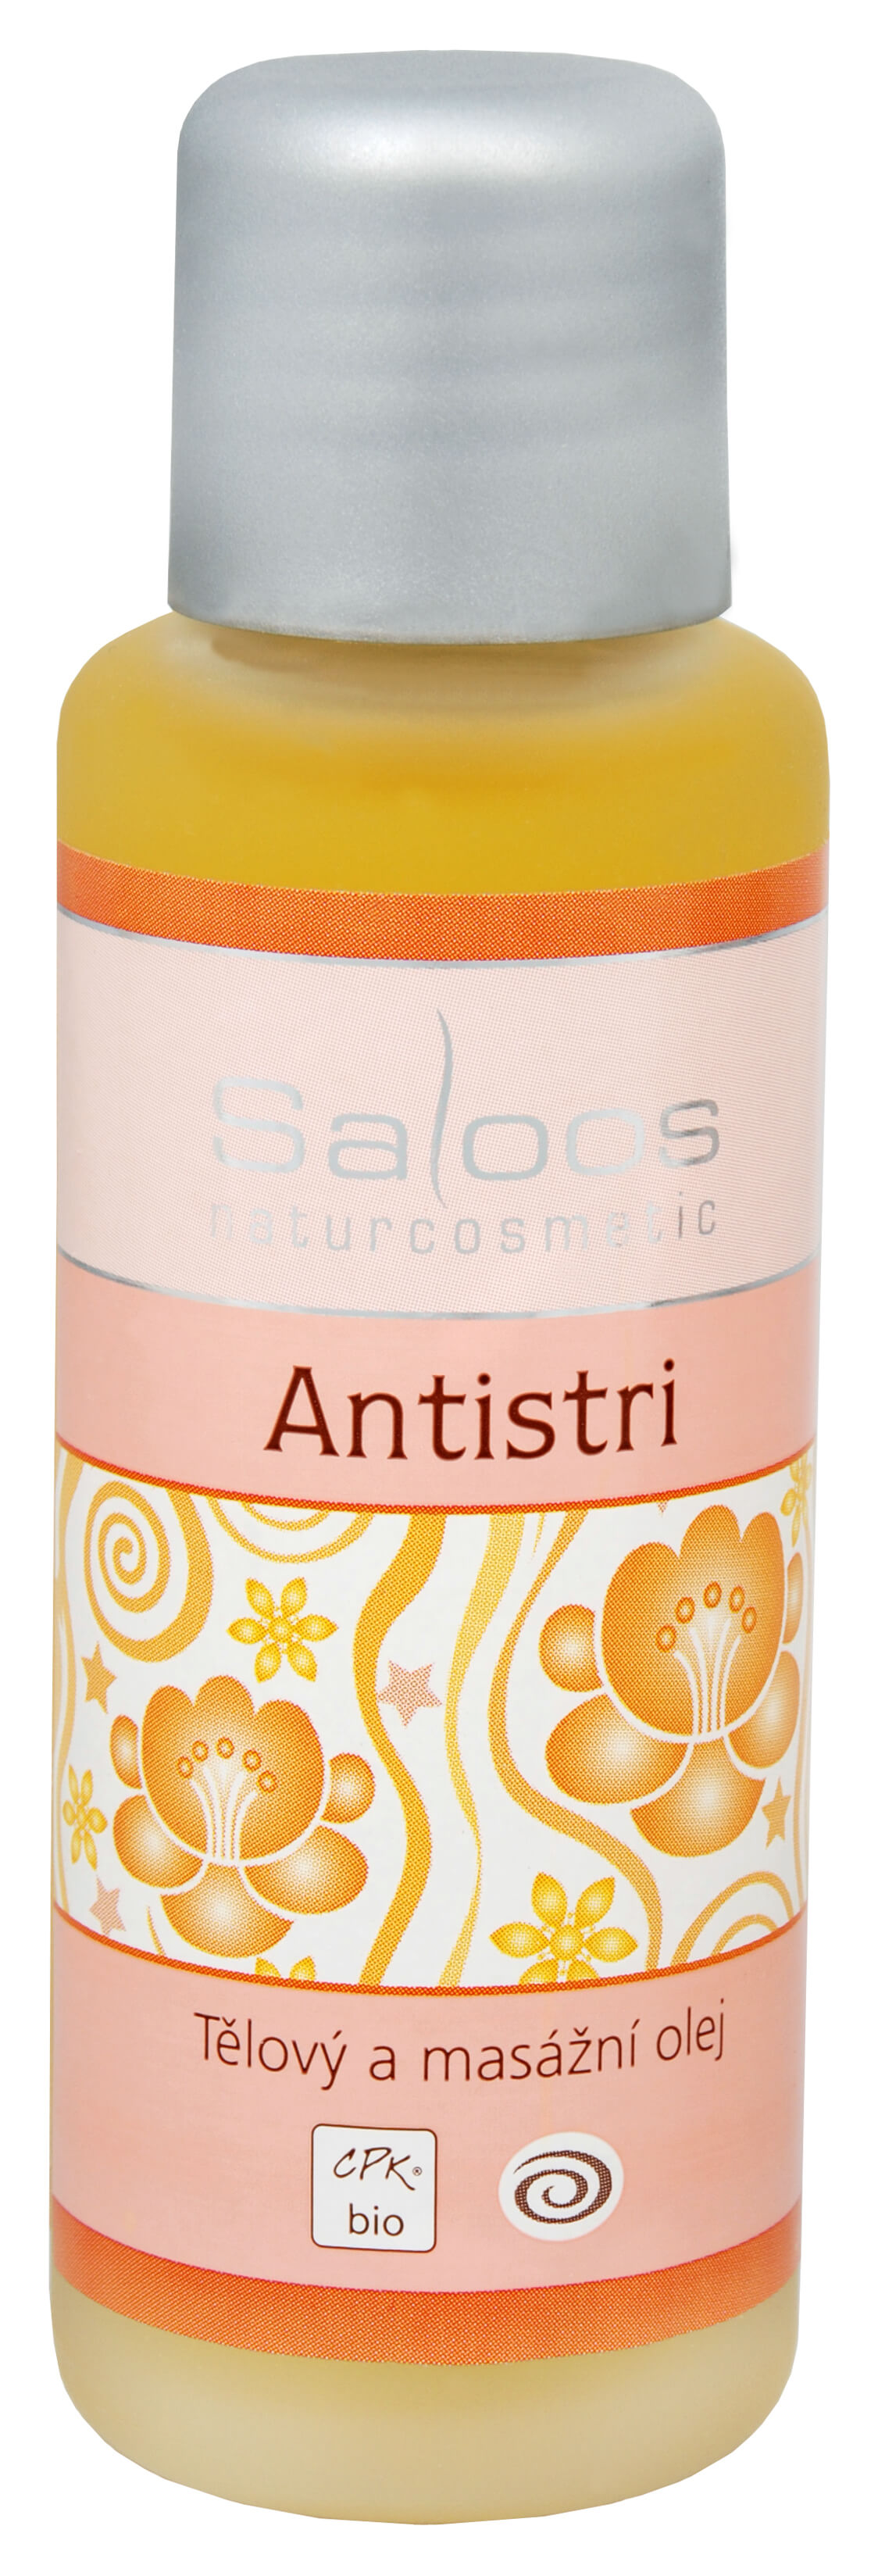 Zobrazit detail výrobku Saloos Bio tělový a masážní olej - Antistri 50 ml